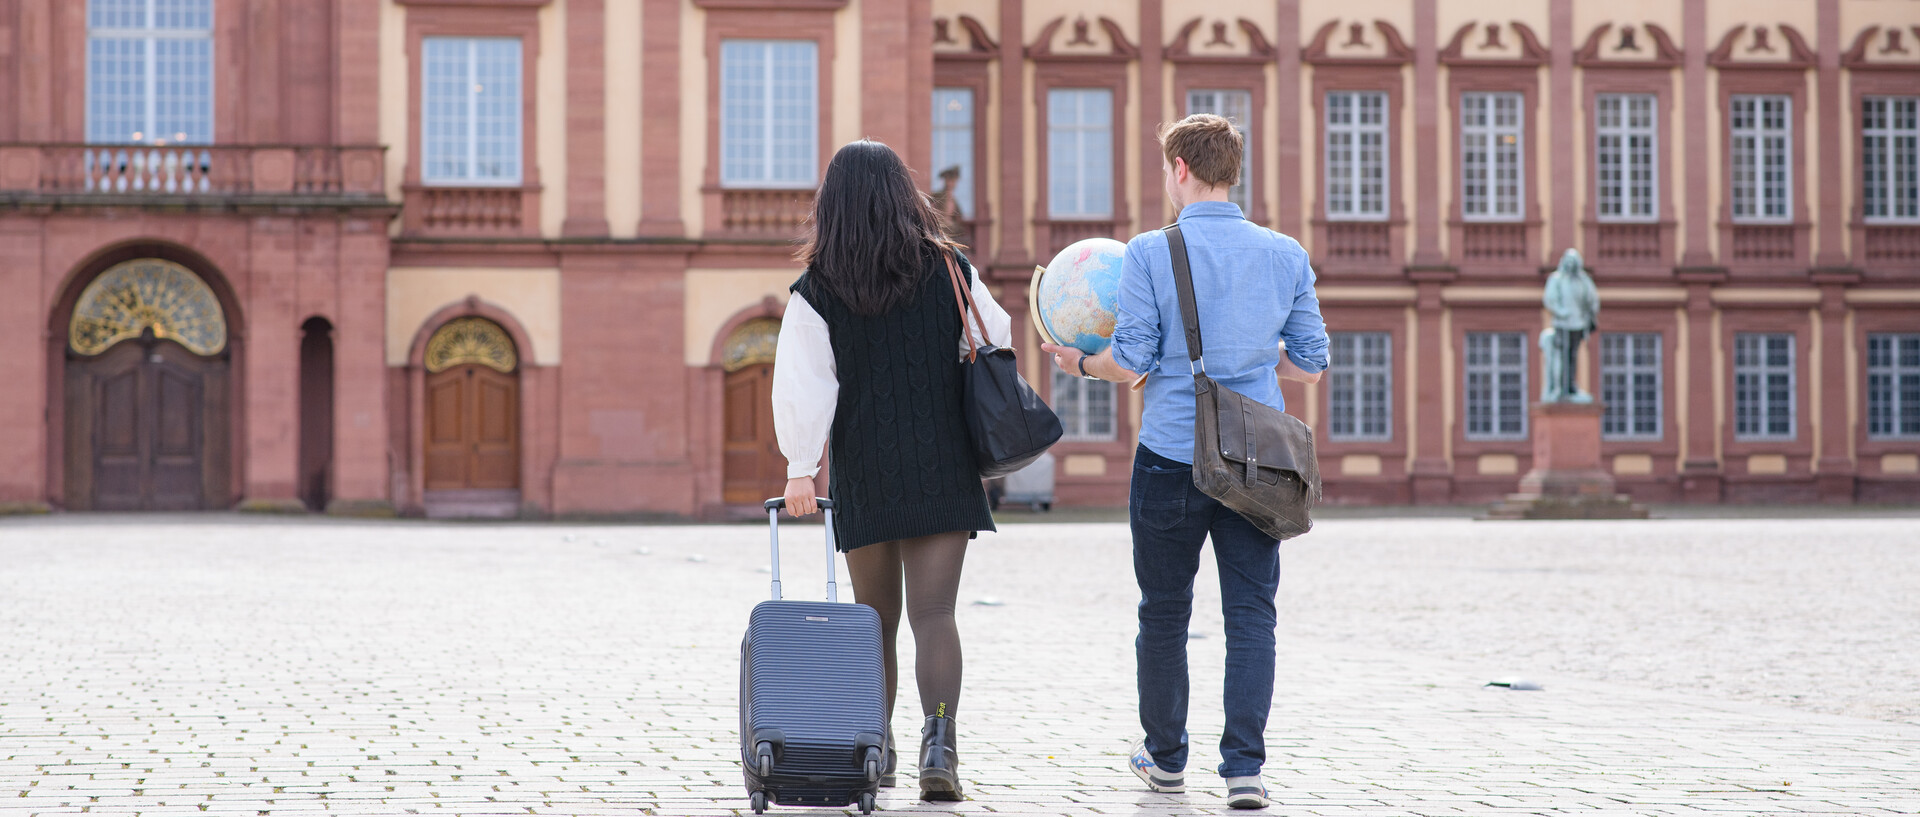 Zwei Personen laufen nebeneinander auf das Schloss der Uni Mannheim zu. Eine Person zieht einen schwarzen Koffer, während die andere Person eine Tasche sowien einen Globus trägt.